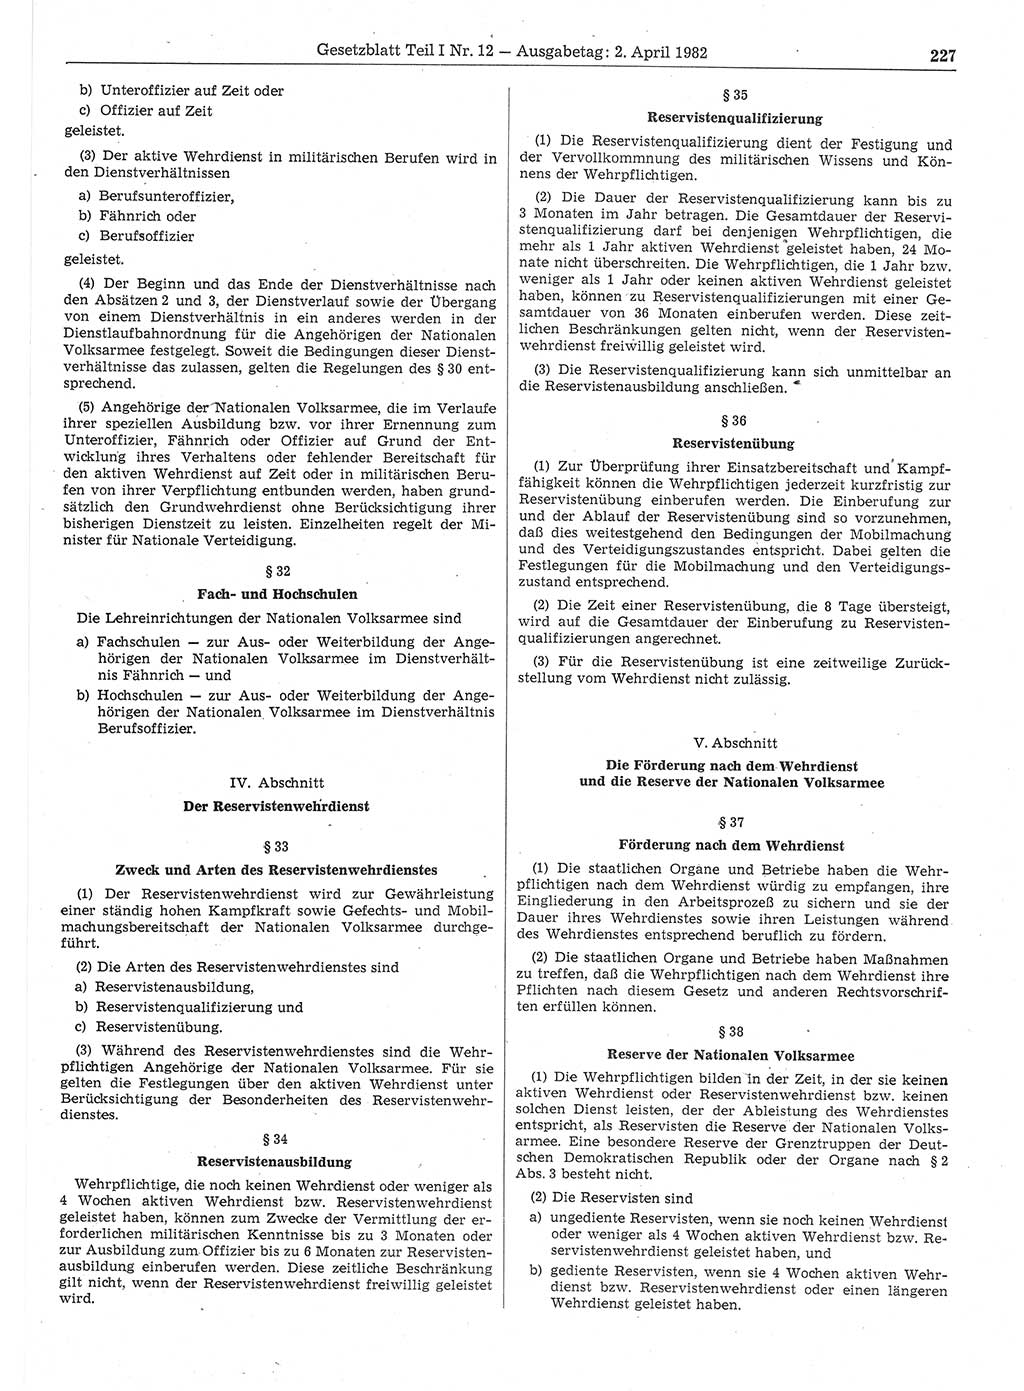 Gesetzblatt (GBl.) der Deutschen Demokratischen Republik (DDR) Teil Ⅰ 1982, Seite 227 (GBl. DDR Ⅰ 1982, S. 227)